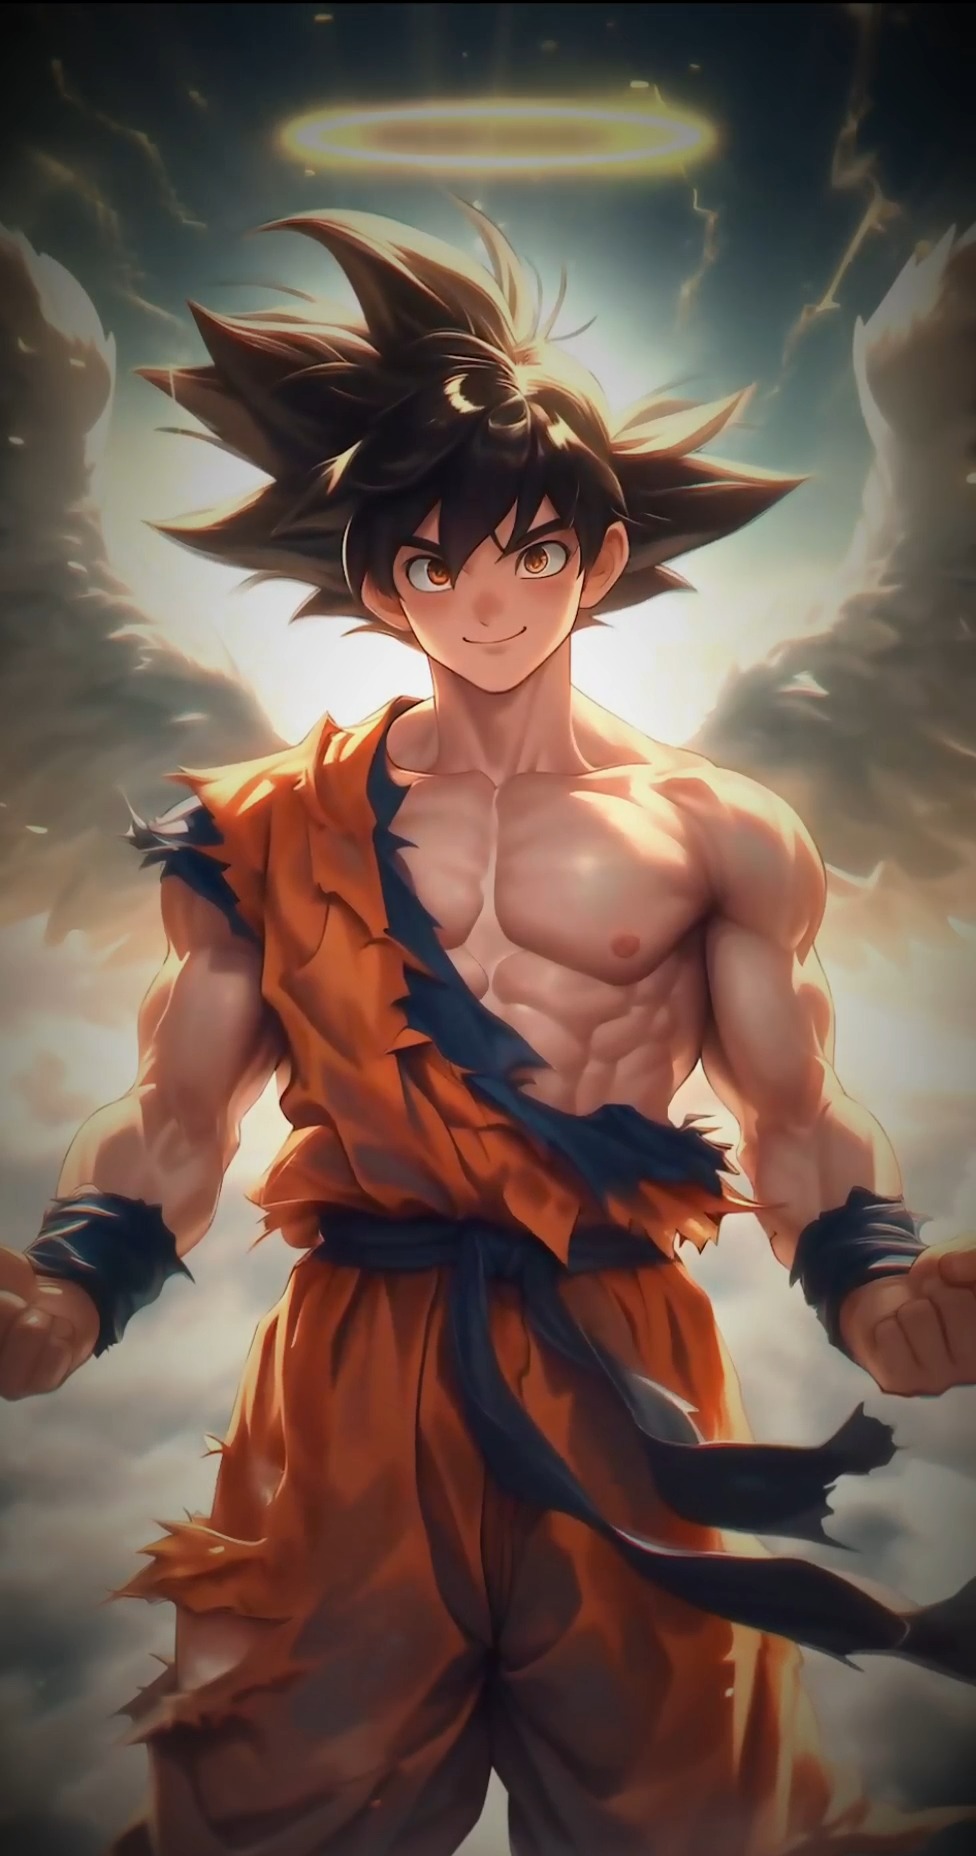 thumb for Son Goku